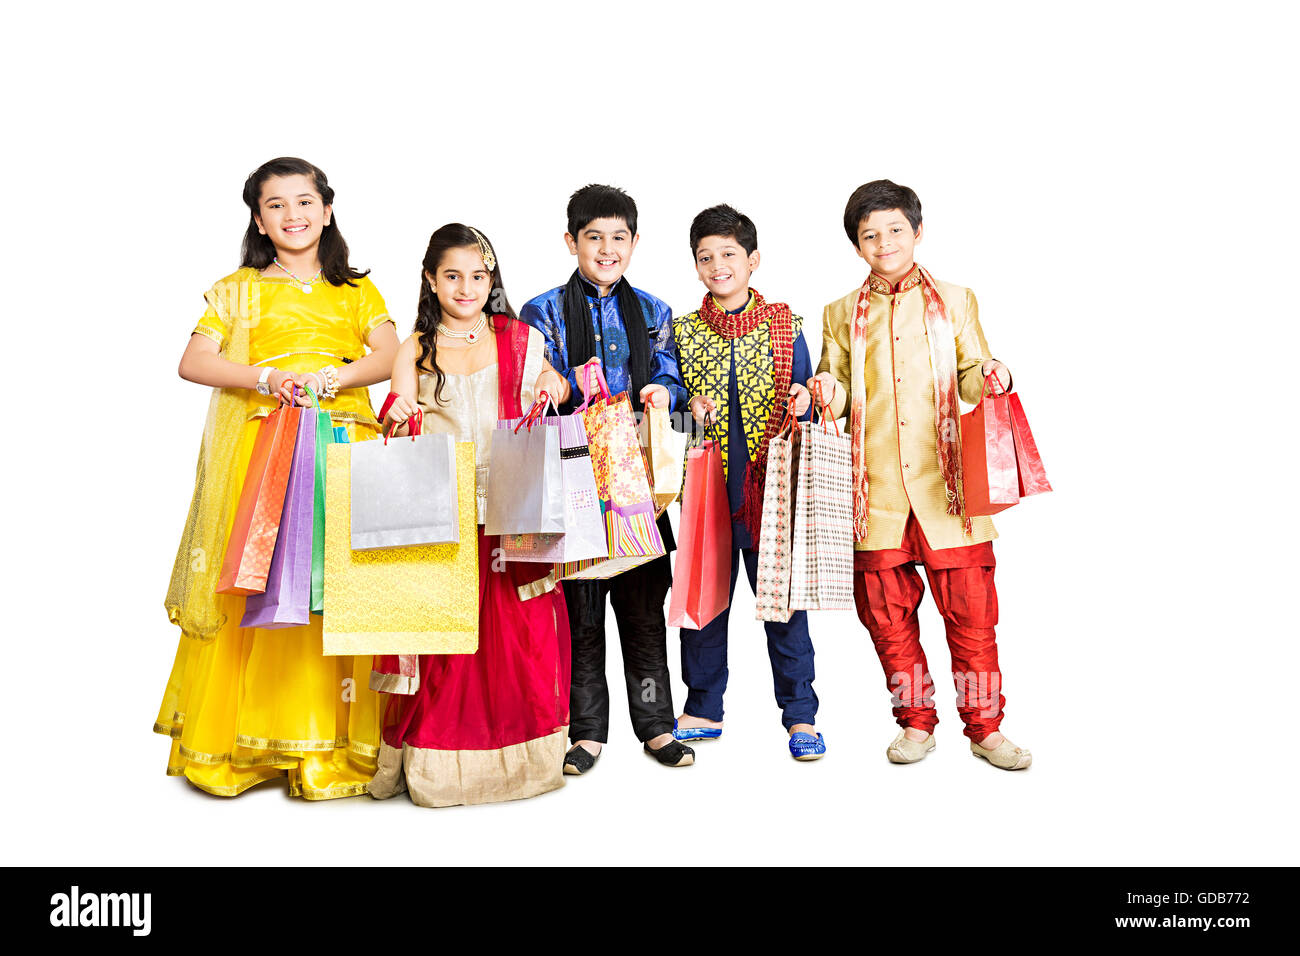 5 Ragazzi Ragazze e ragazzi amici Diwali Festival Standing Shopping Bag mostra Foto Stock